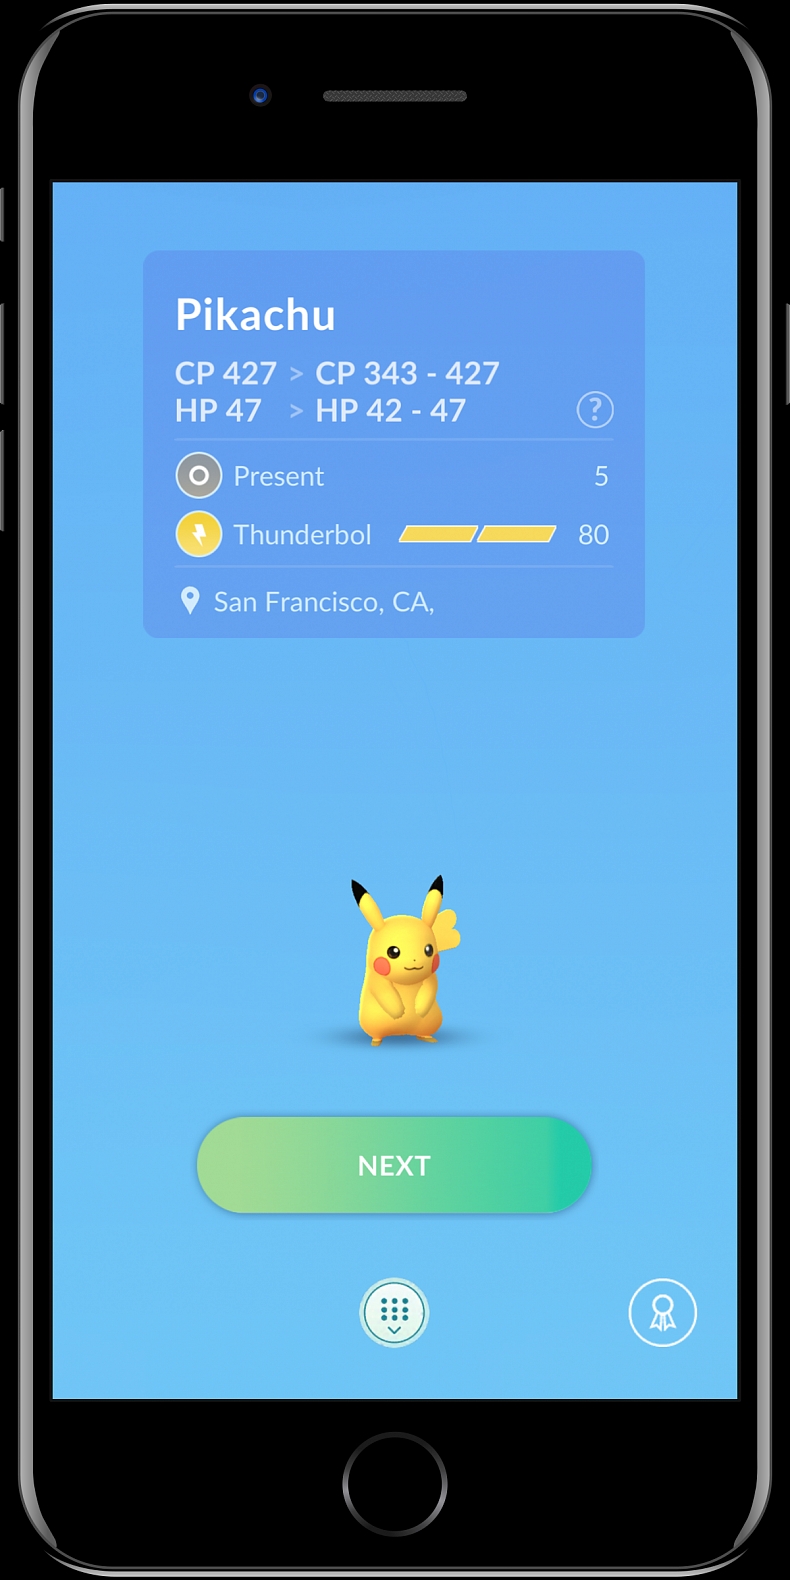 [PO:GO] Skvělé funkce v Pokémon GO